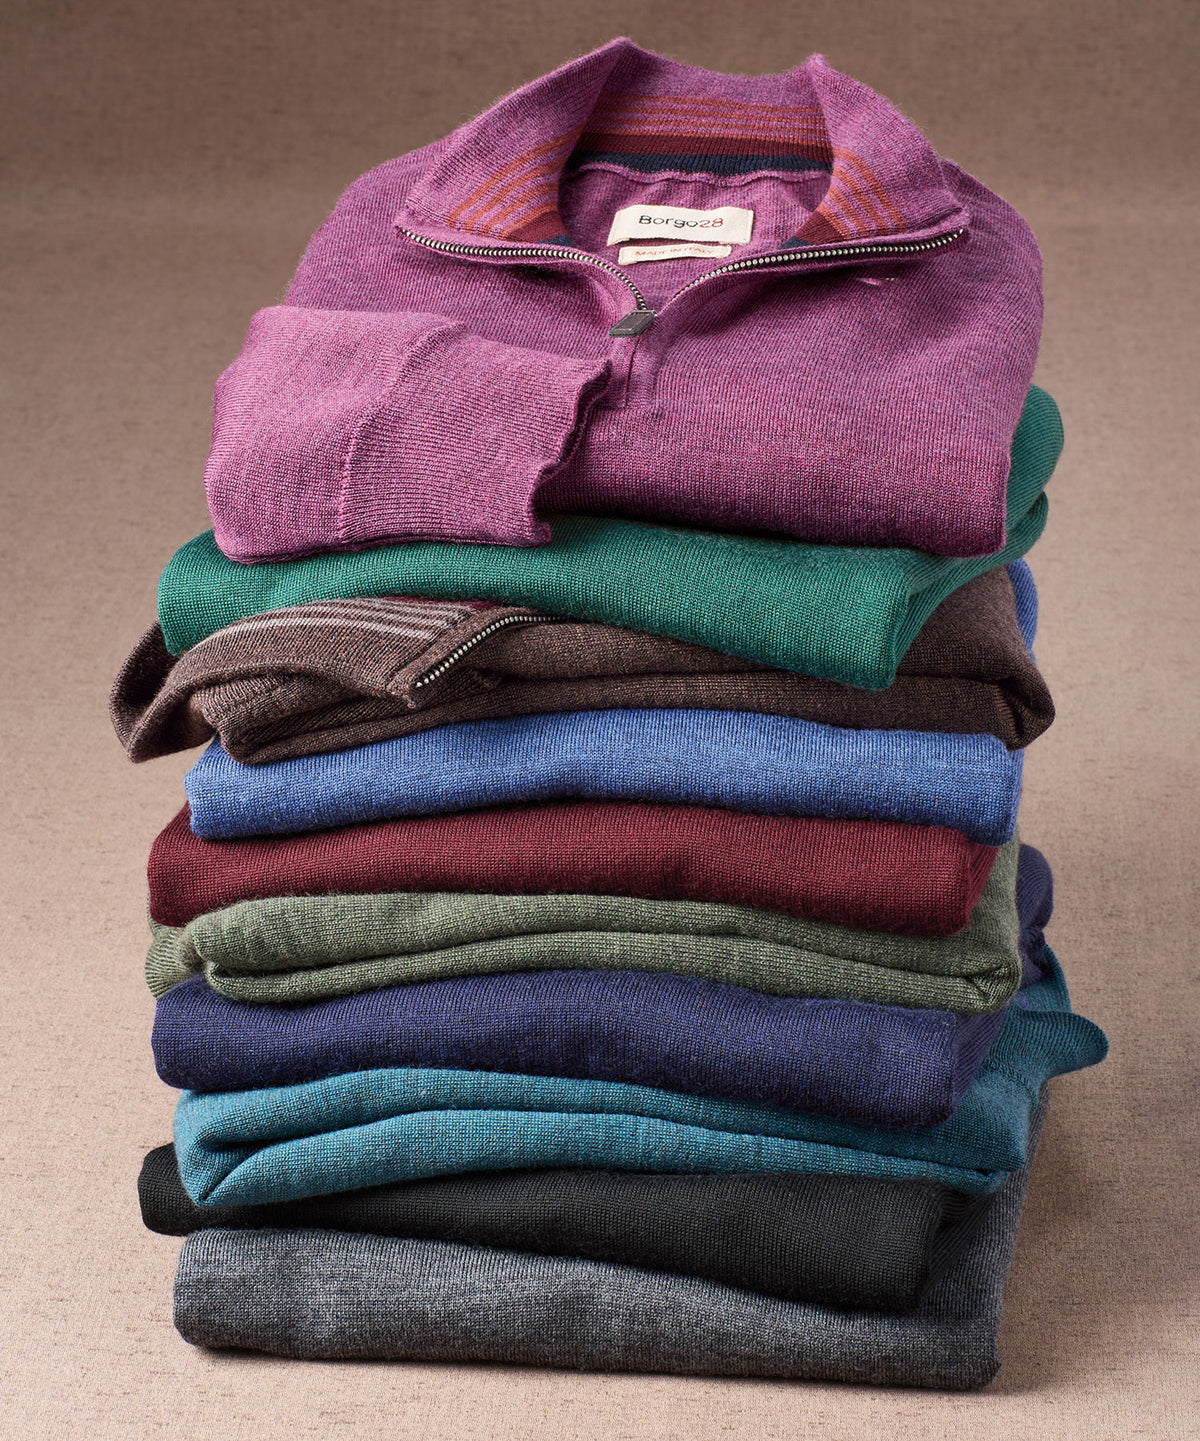 Merino Wool Quarter-Zip Sweater